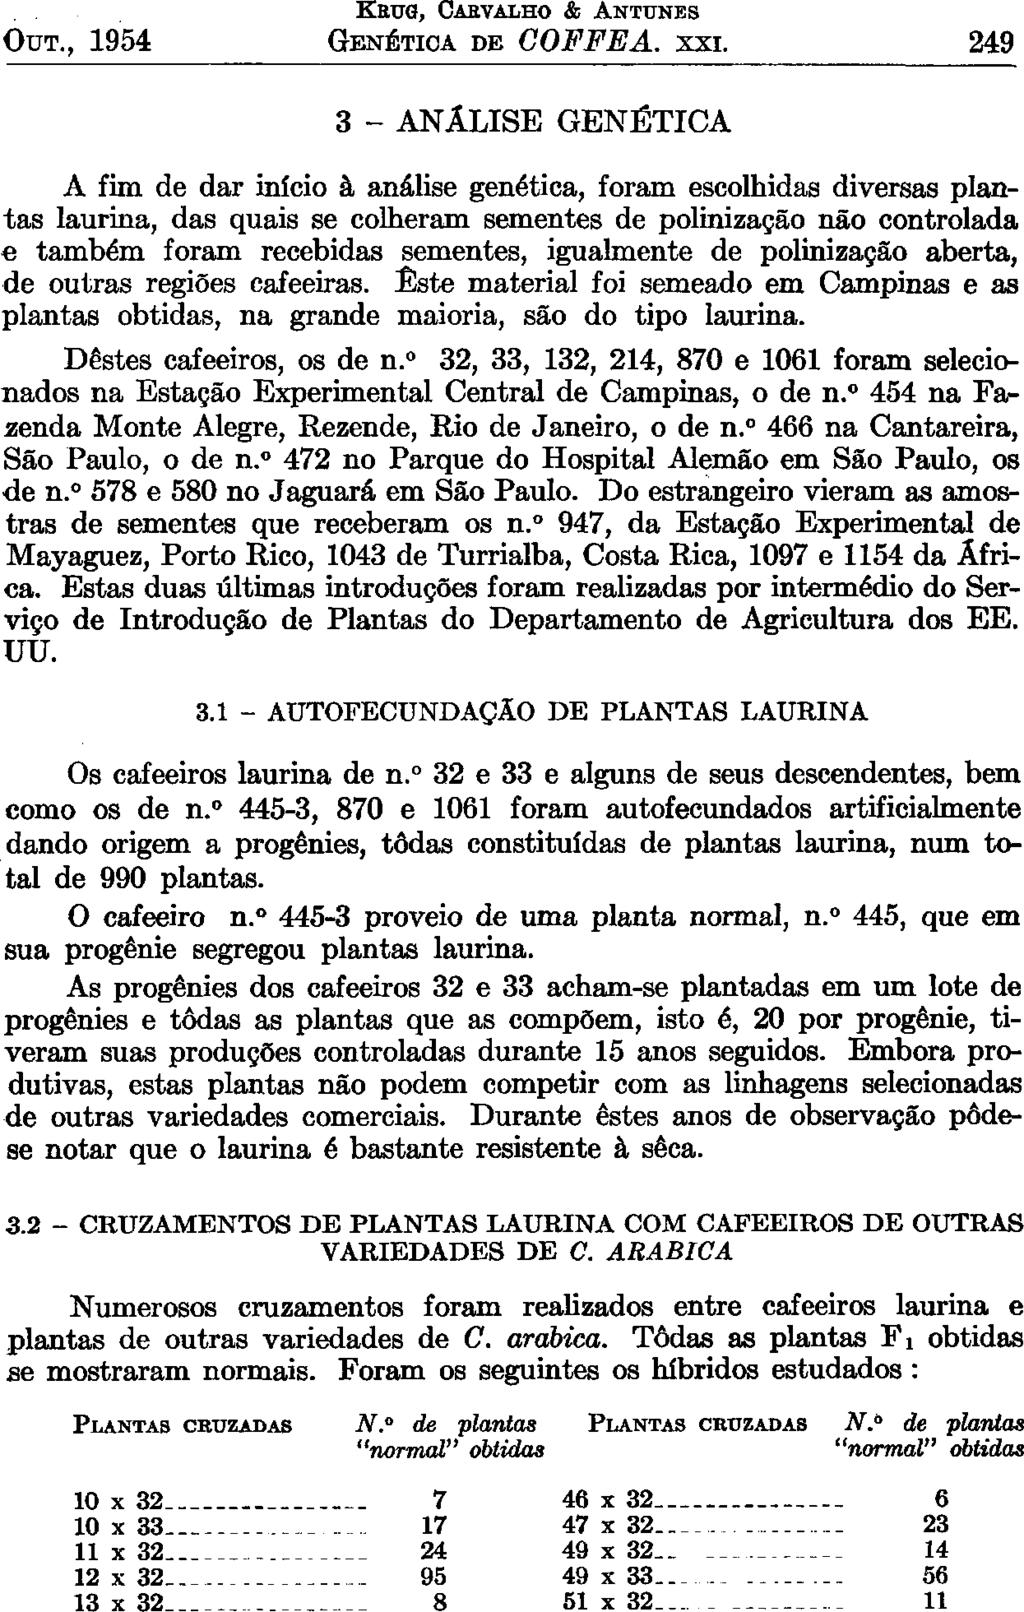 OUT., 1954 KKTJG, CARVALHO & ANTUNES GENÉTICA DE COFFEA. xxi.